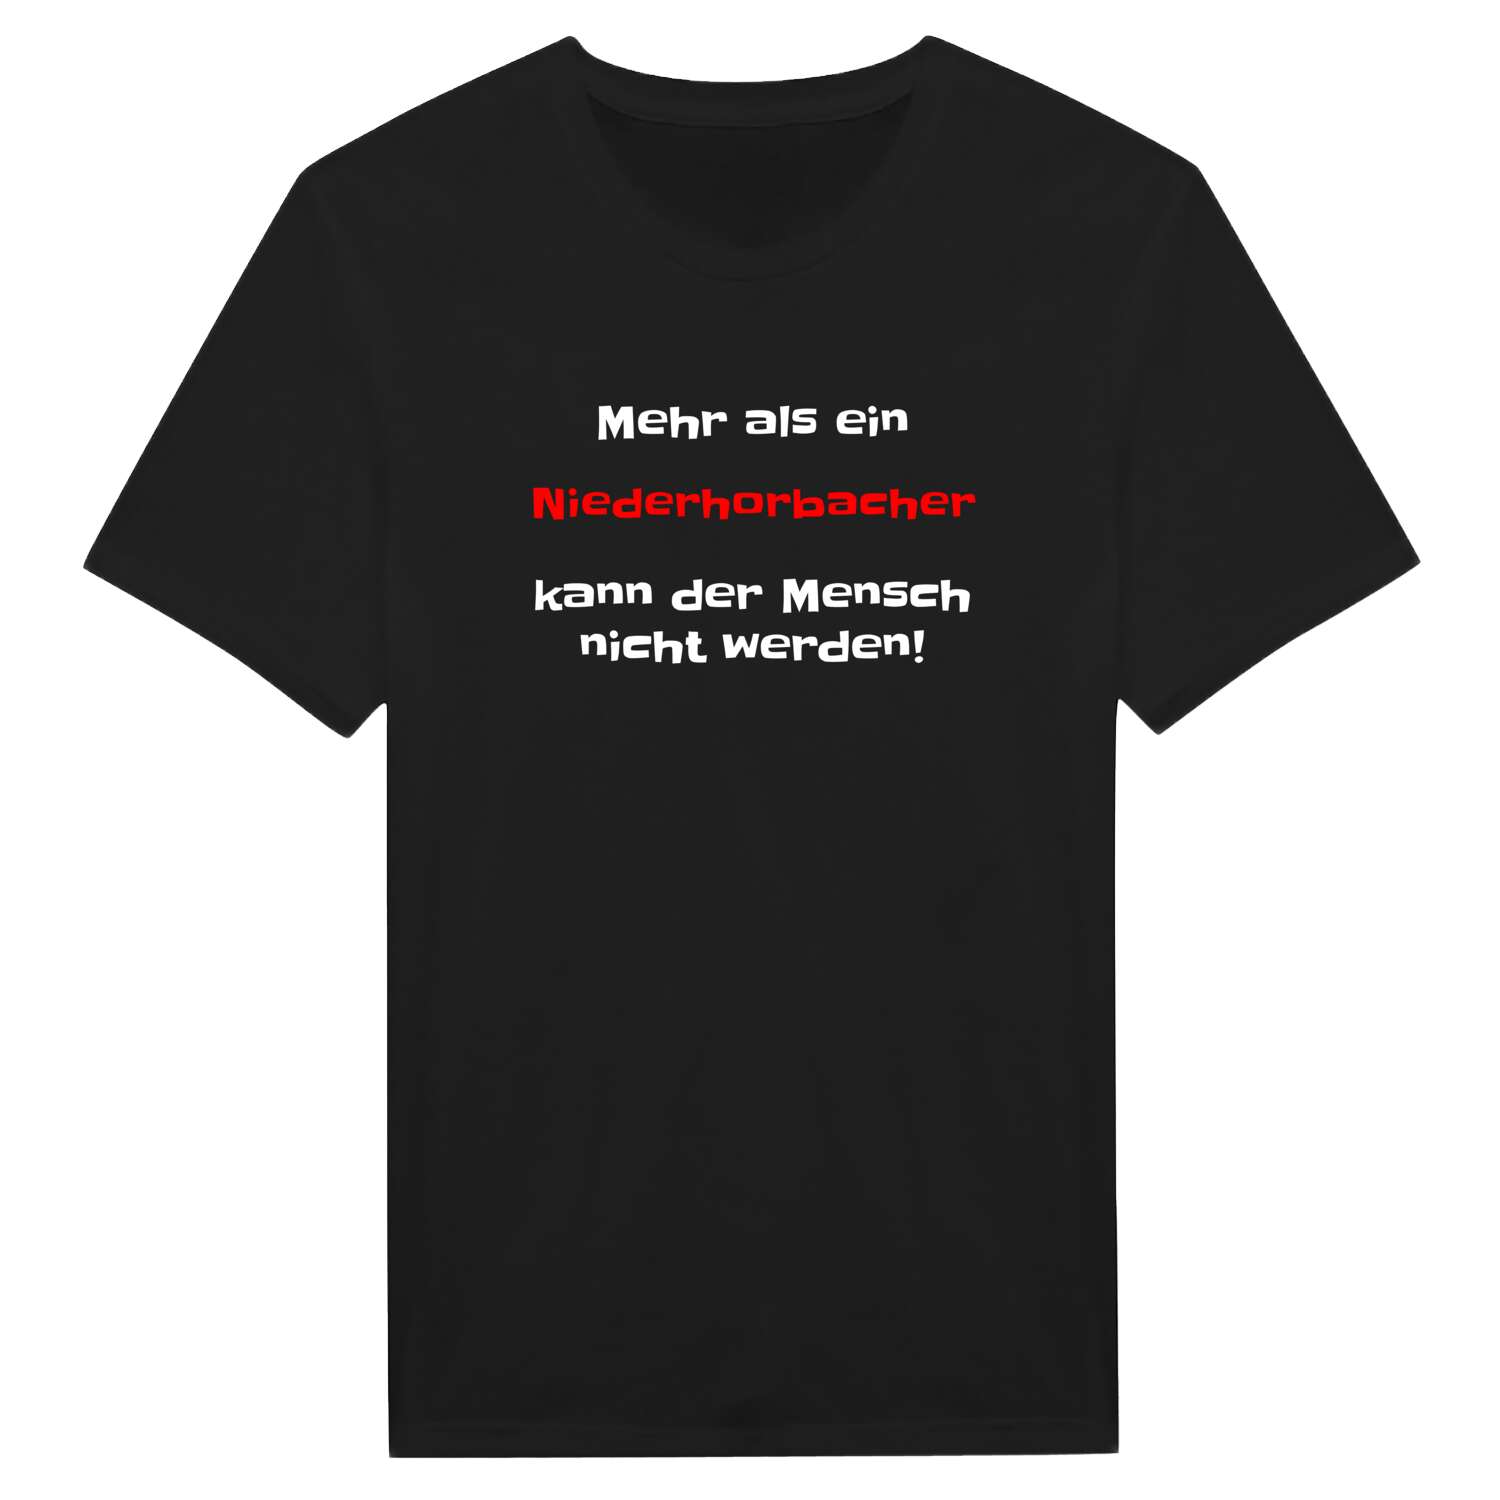 Niederhorbach T-Shirt »Mehr als ein«